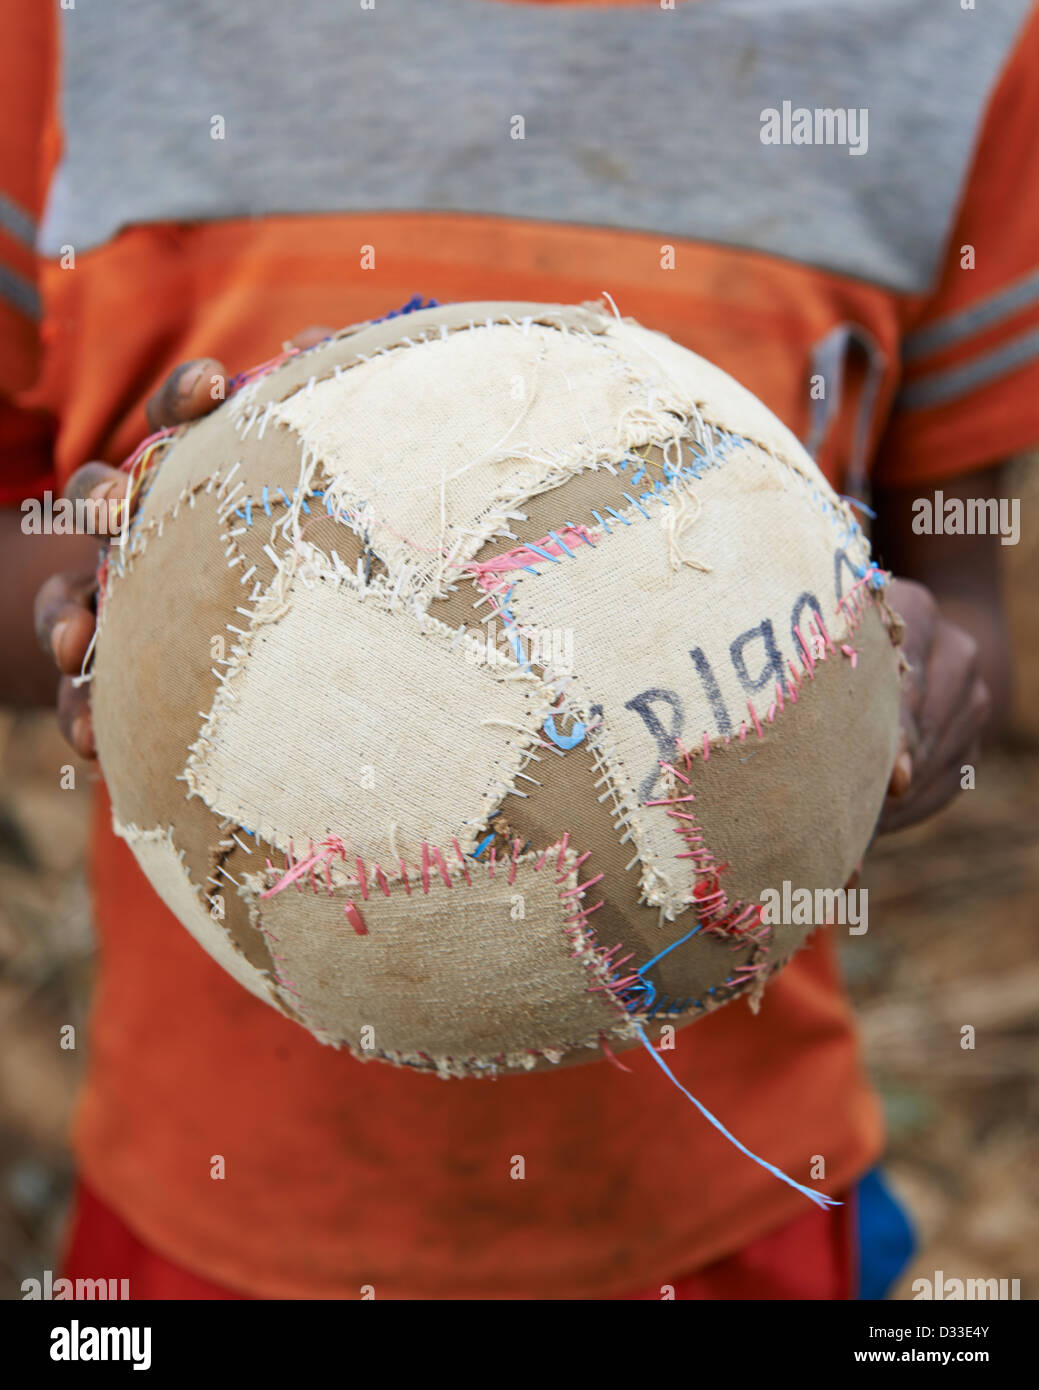 Ein Kind hält eine hausgemachte Fußball- oder Fußball-Kugel Stockfoto